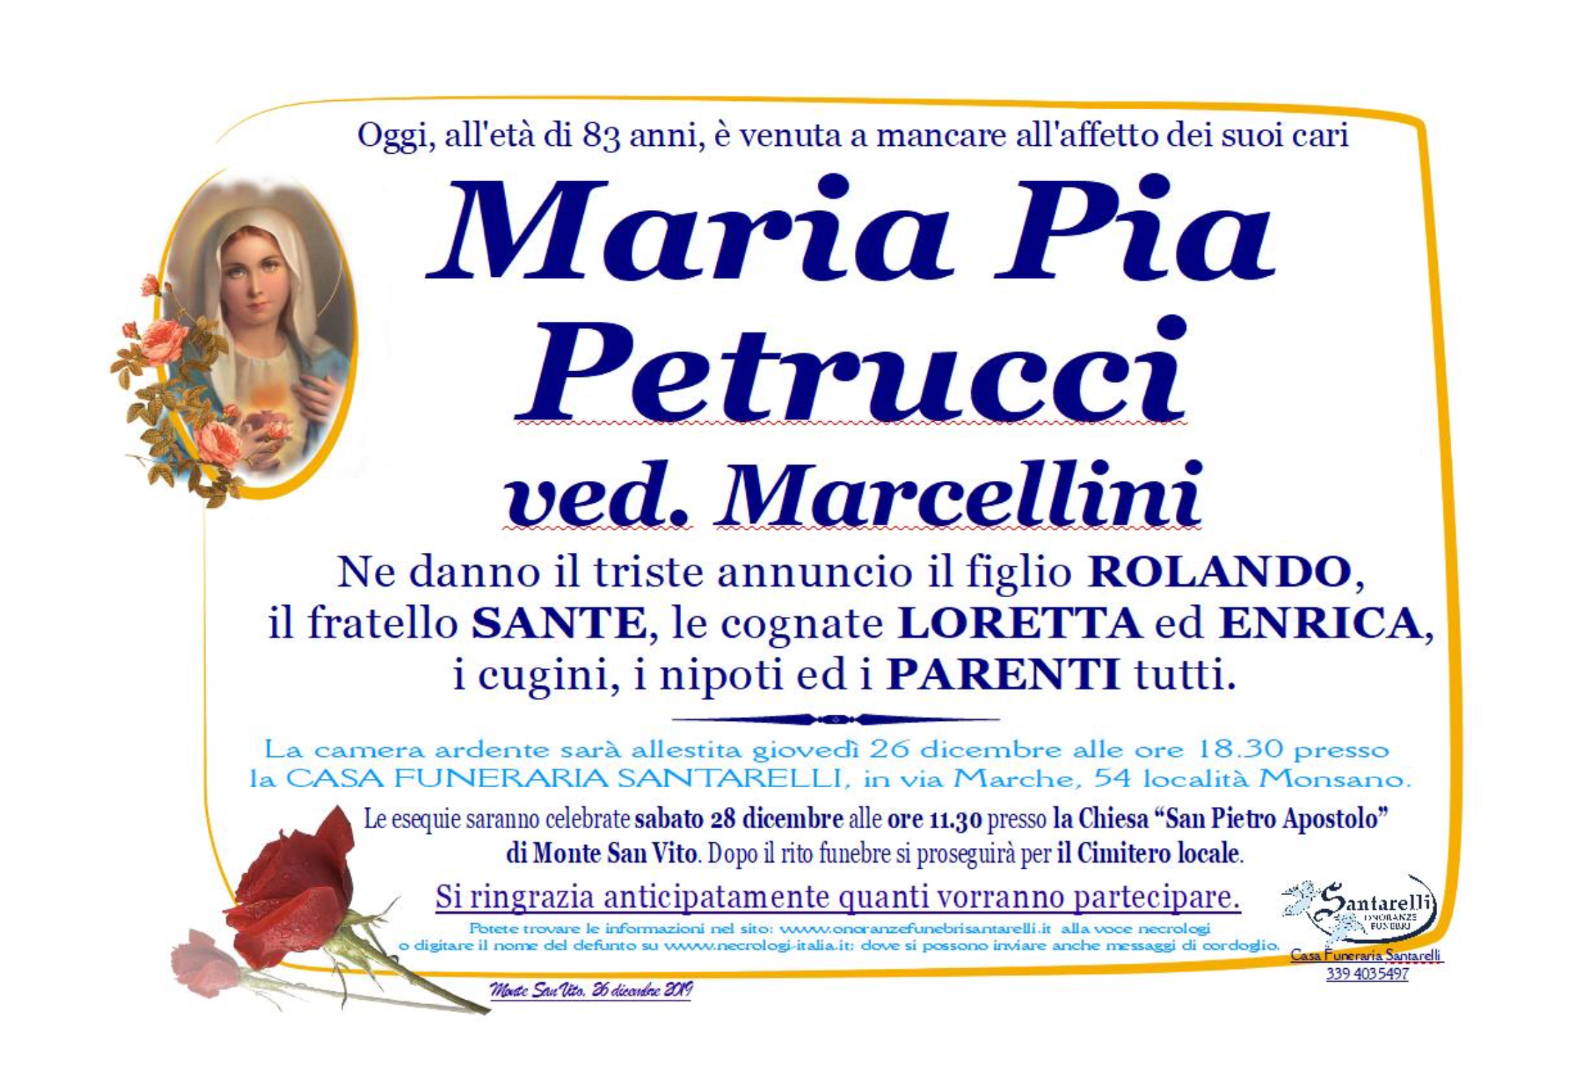 Maria Pia Petrucci